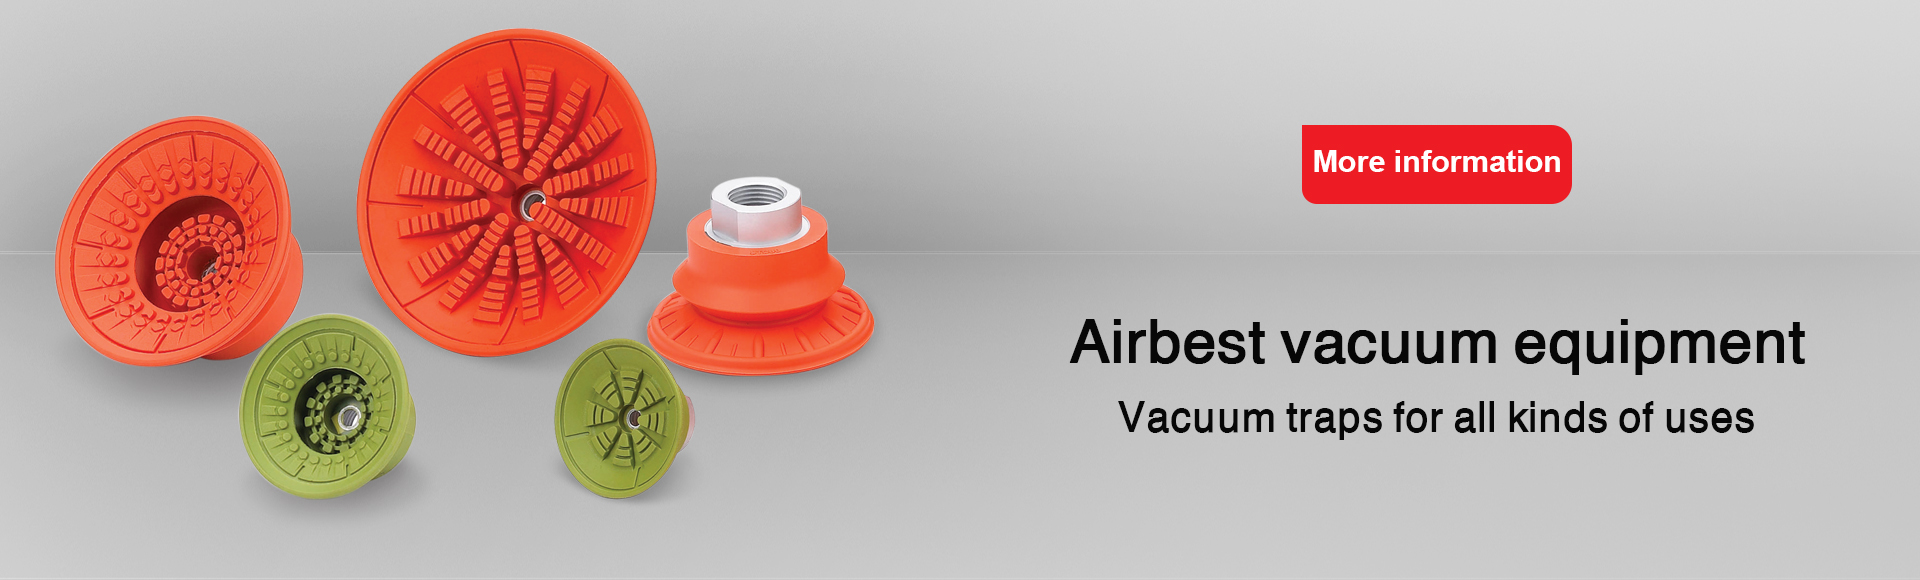 Airbest vacuum equipment and vacuum trap